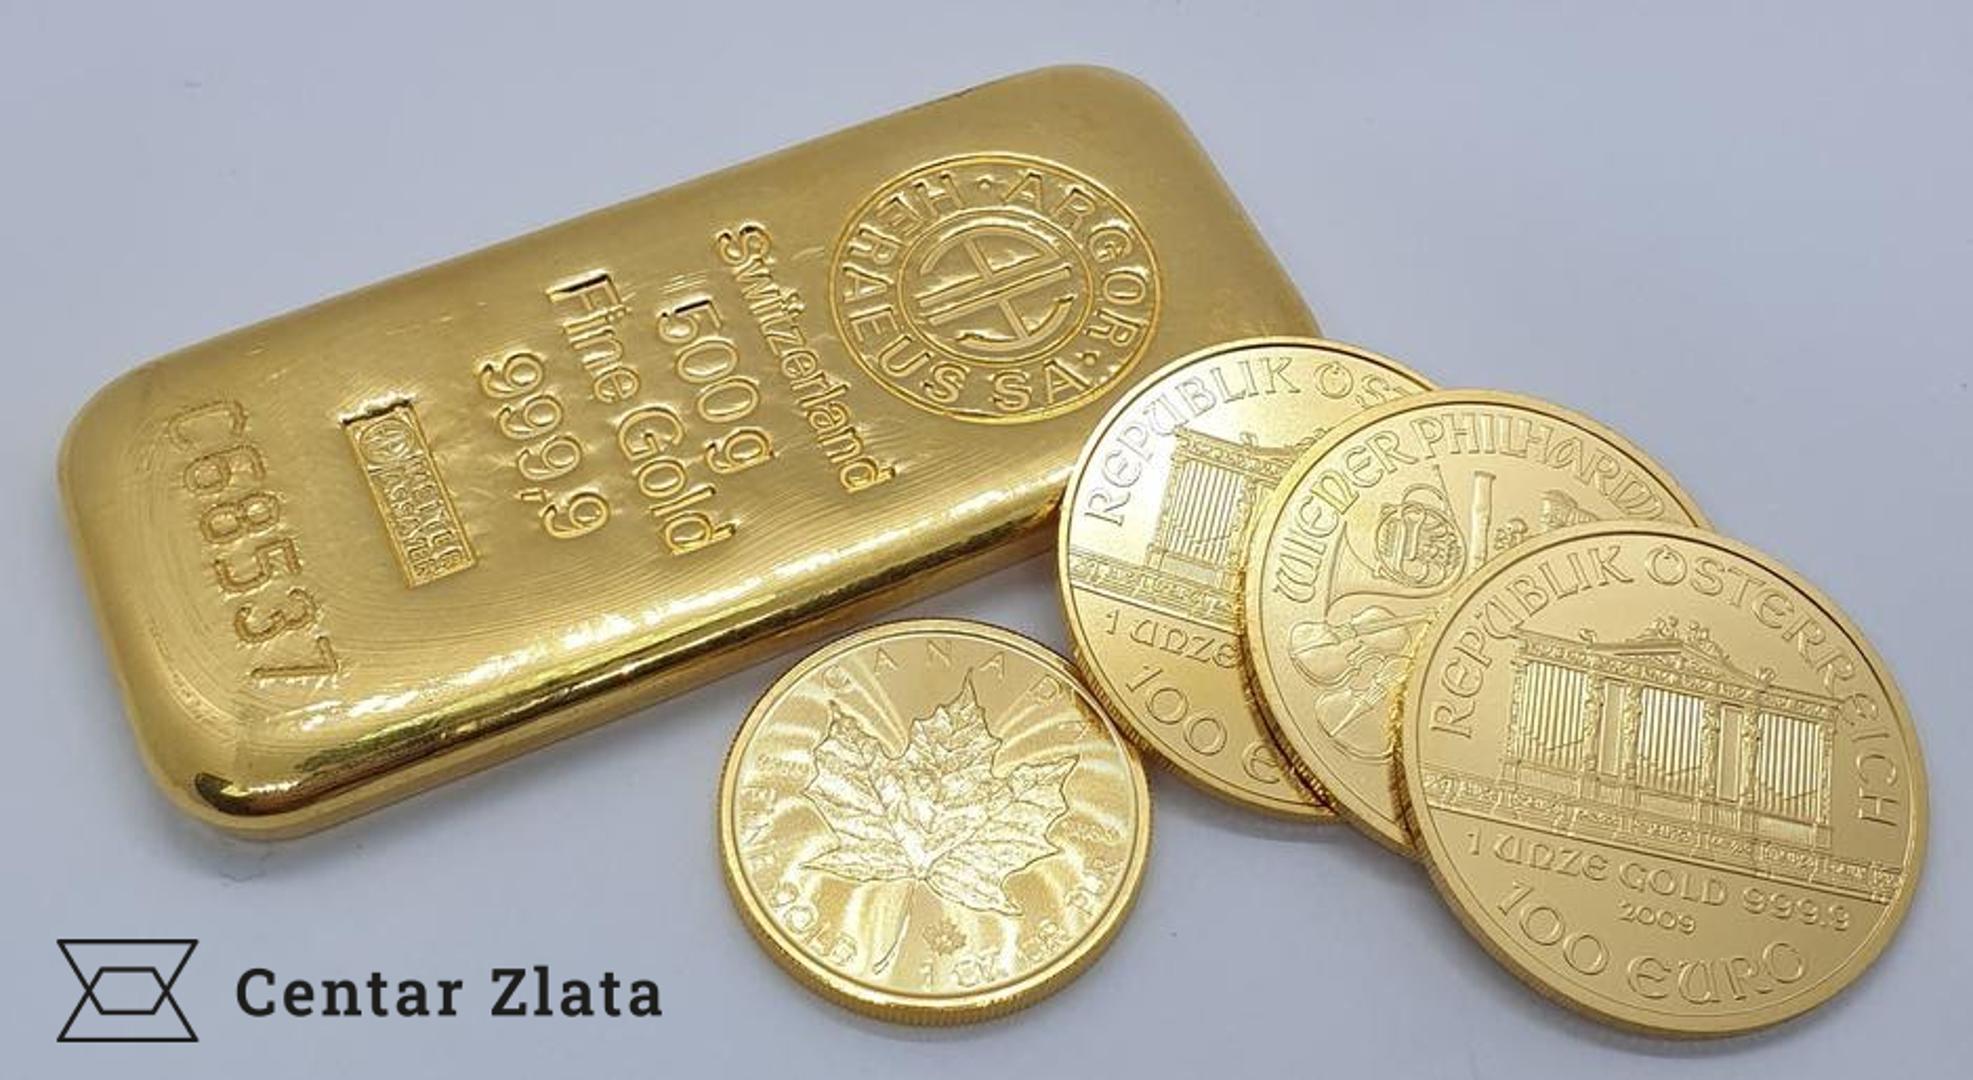 Investicijsko zlato u obliku poluga i zlatnika visoke čistoće